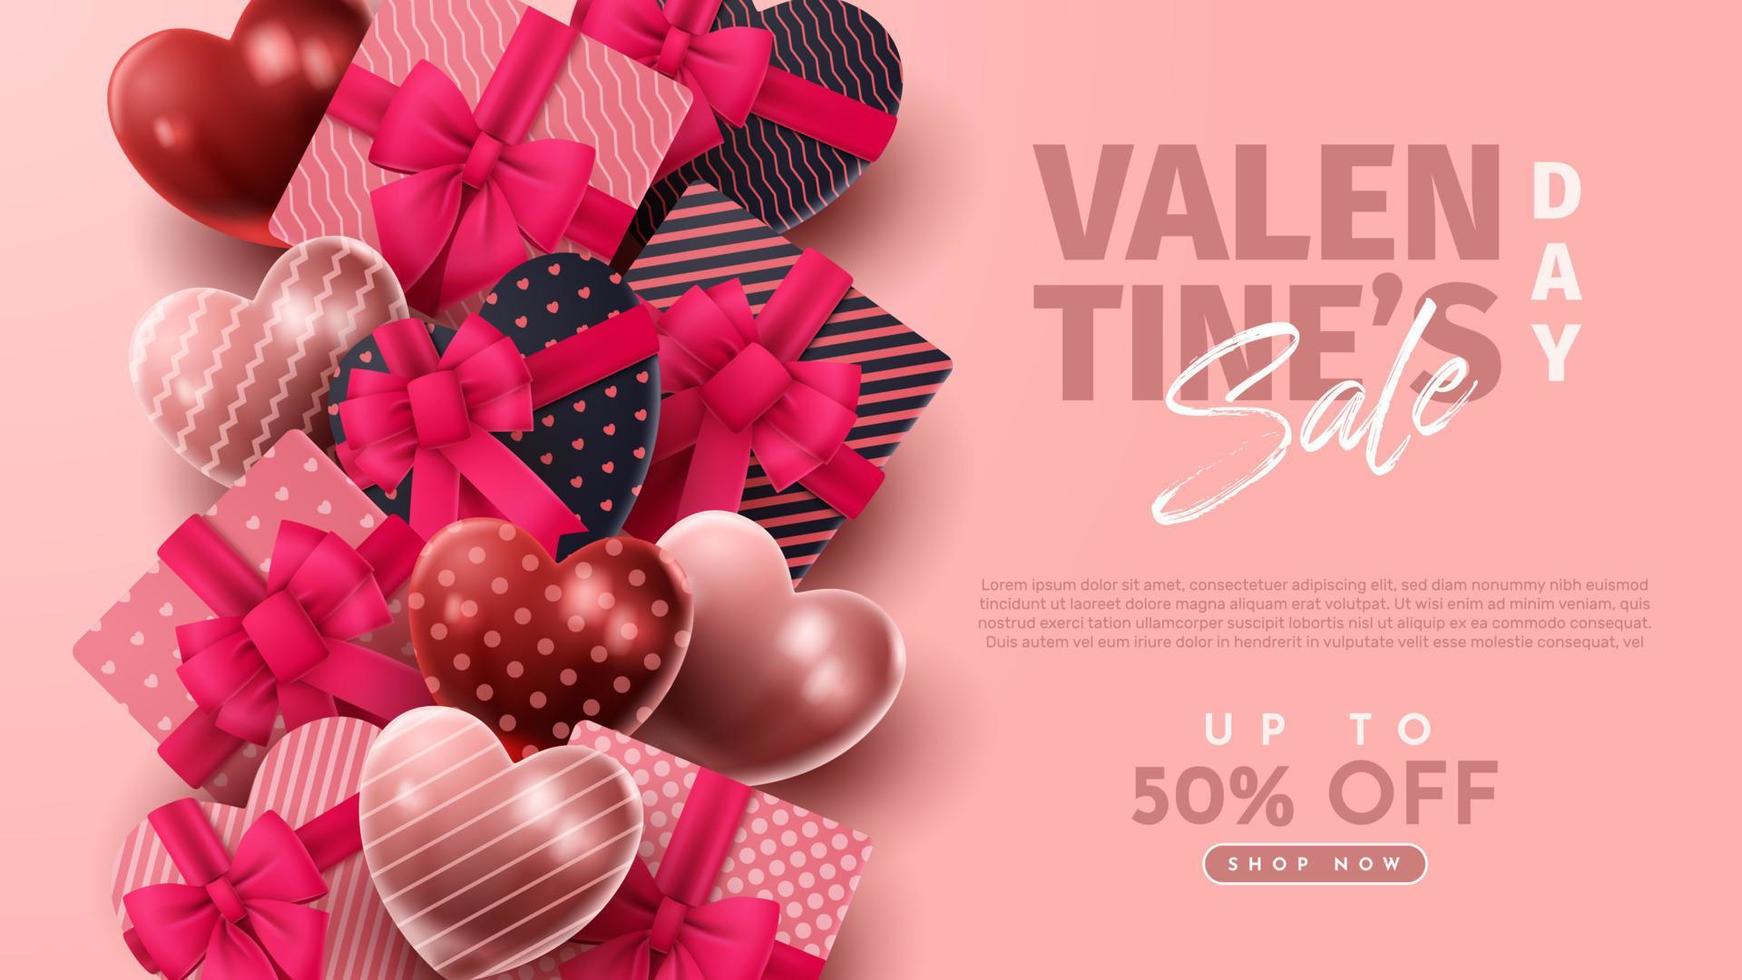 presentazione del prodotto 3d di san valentino per banner, pubblicità e affari. illustrazione vettoriale